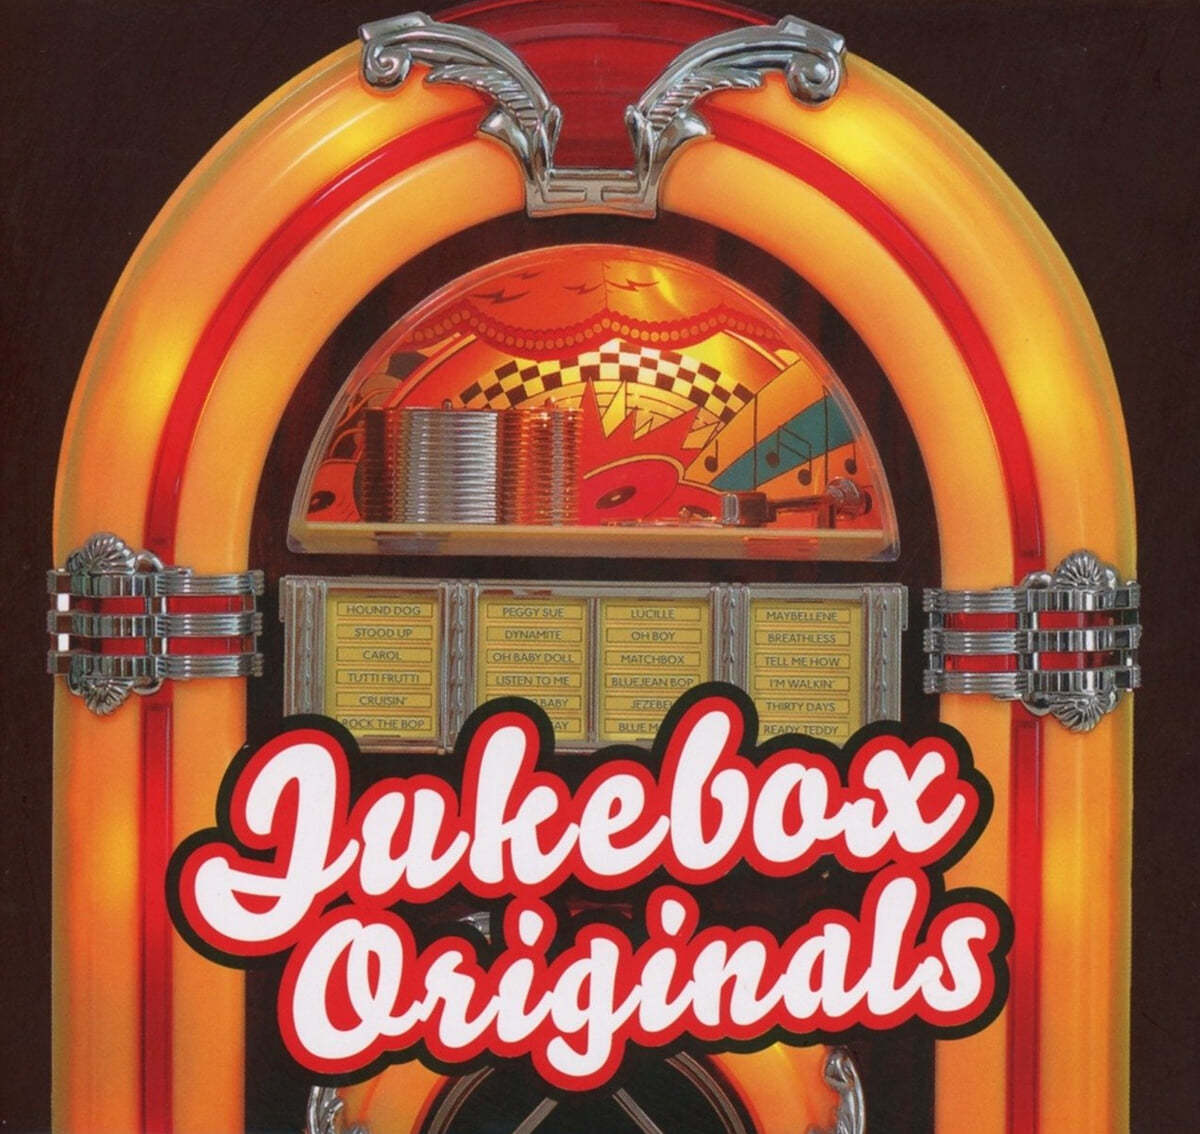 락앤롤 모음집 (Jukebox Originals - Complete Rock'n'Roll : Early Rock n'Roll 10 Musician)